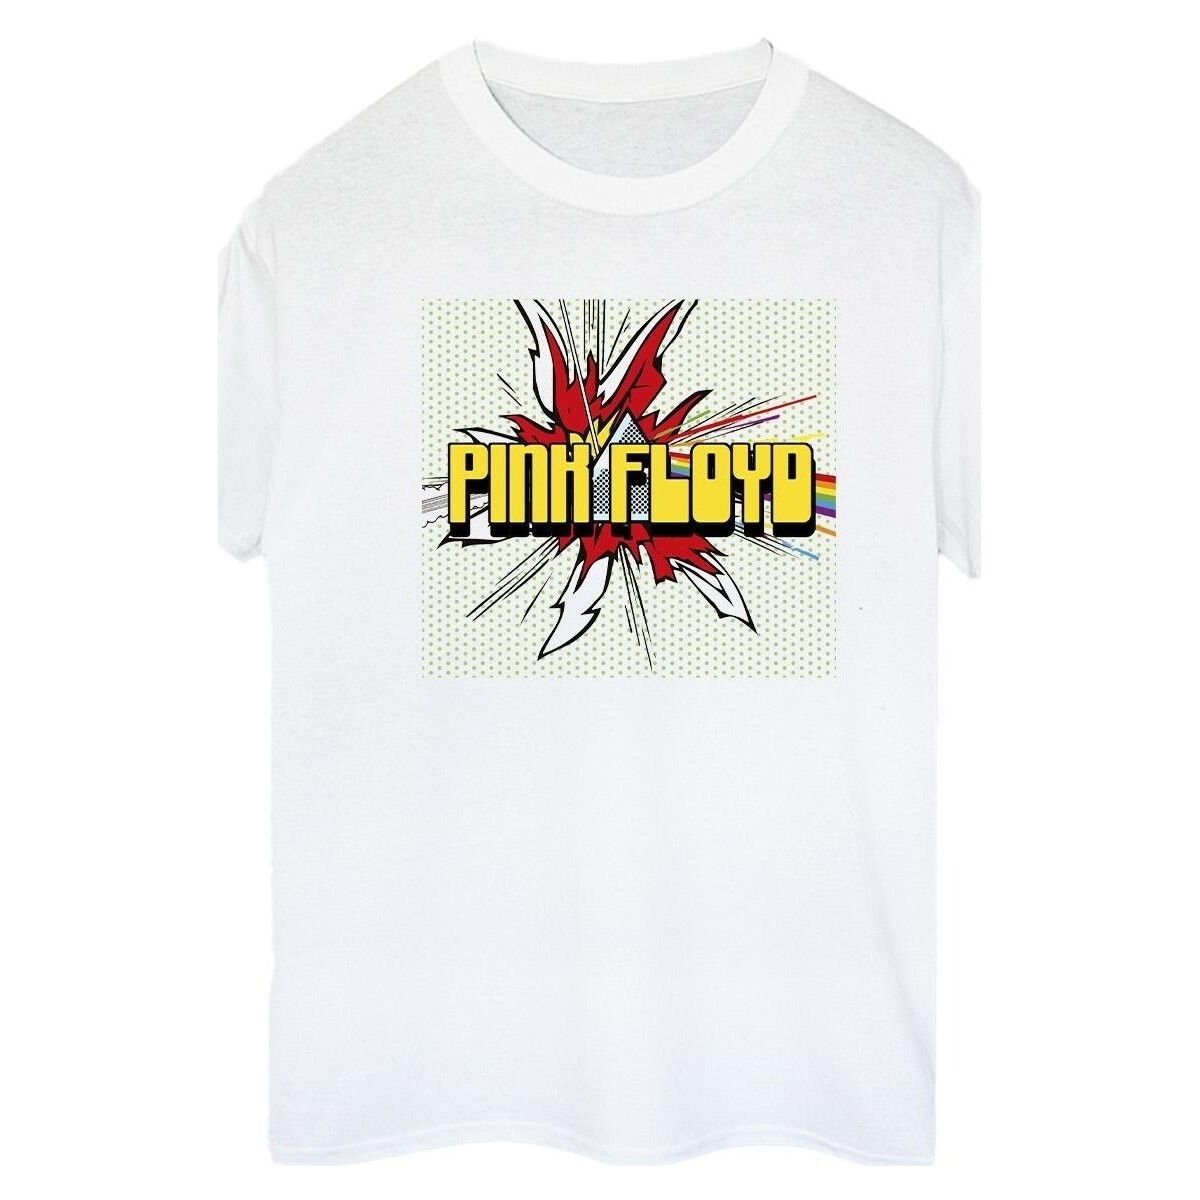 textil Mujer Camisetas manga larga Pink Floyd Pop Art Blanco